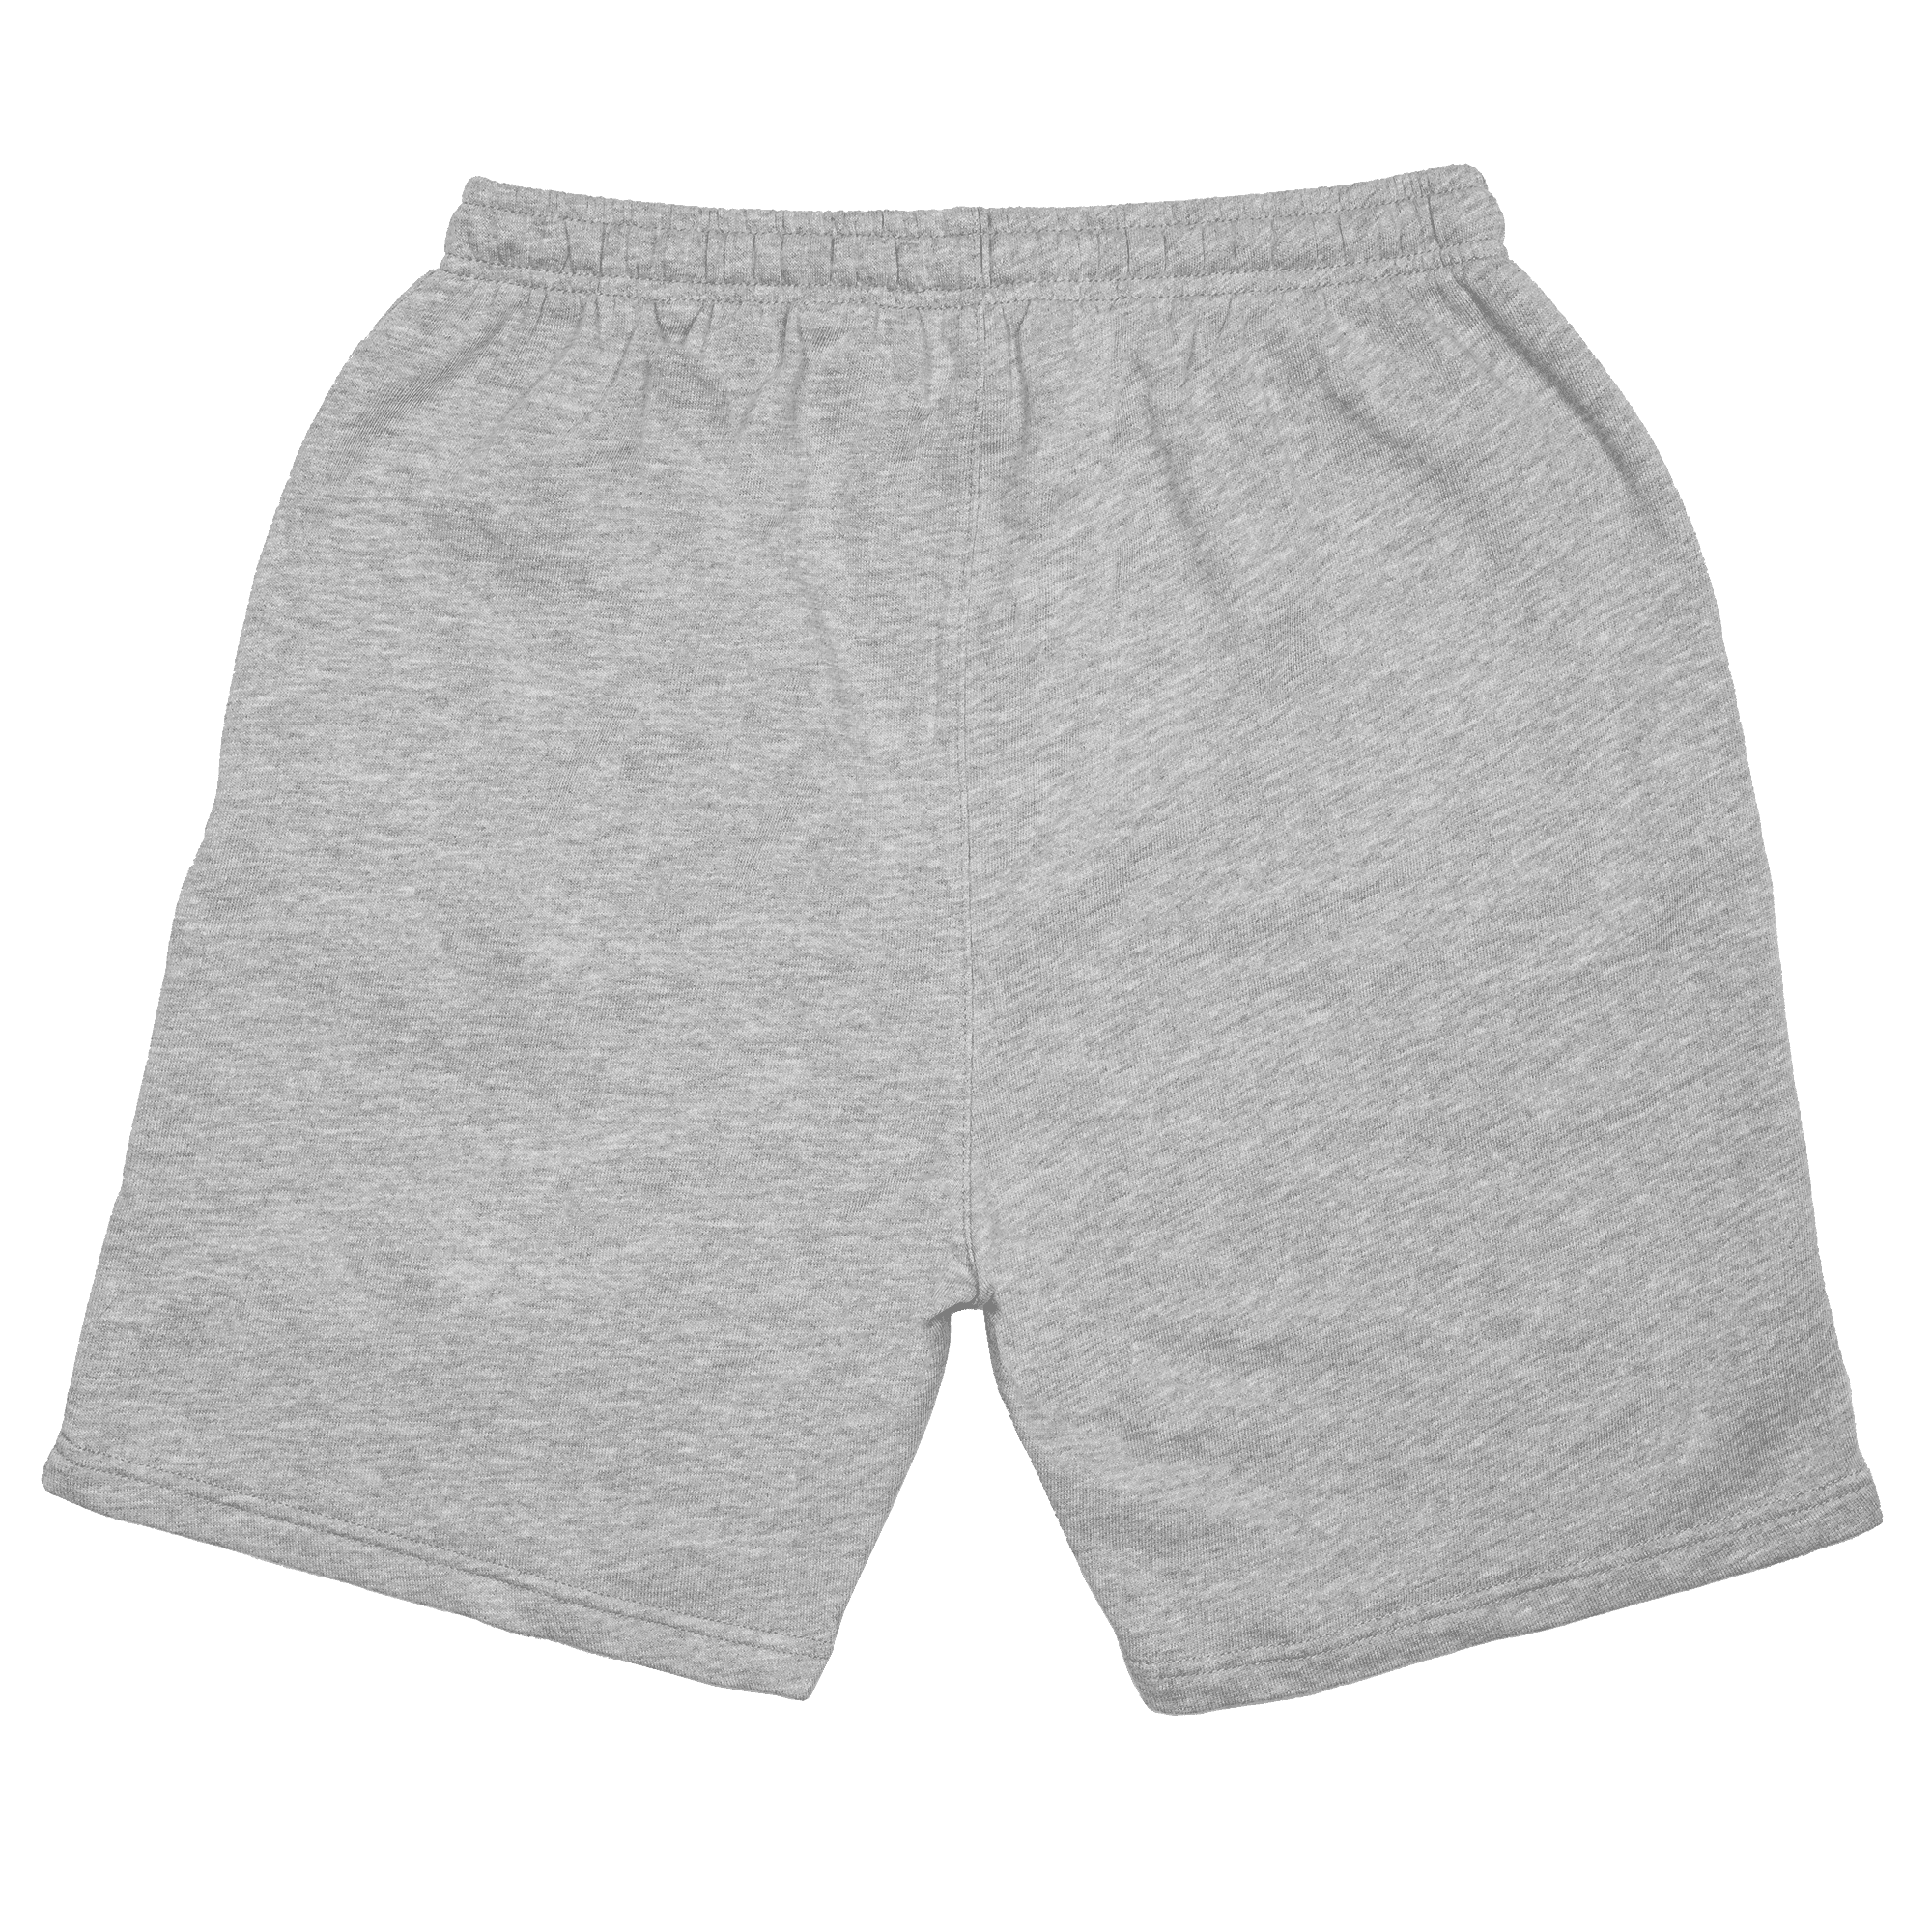 BU1 pantalones cortos para caminar gris